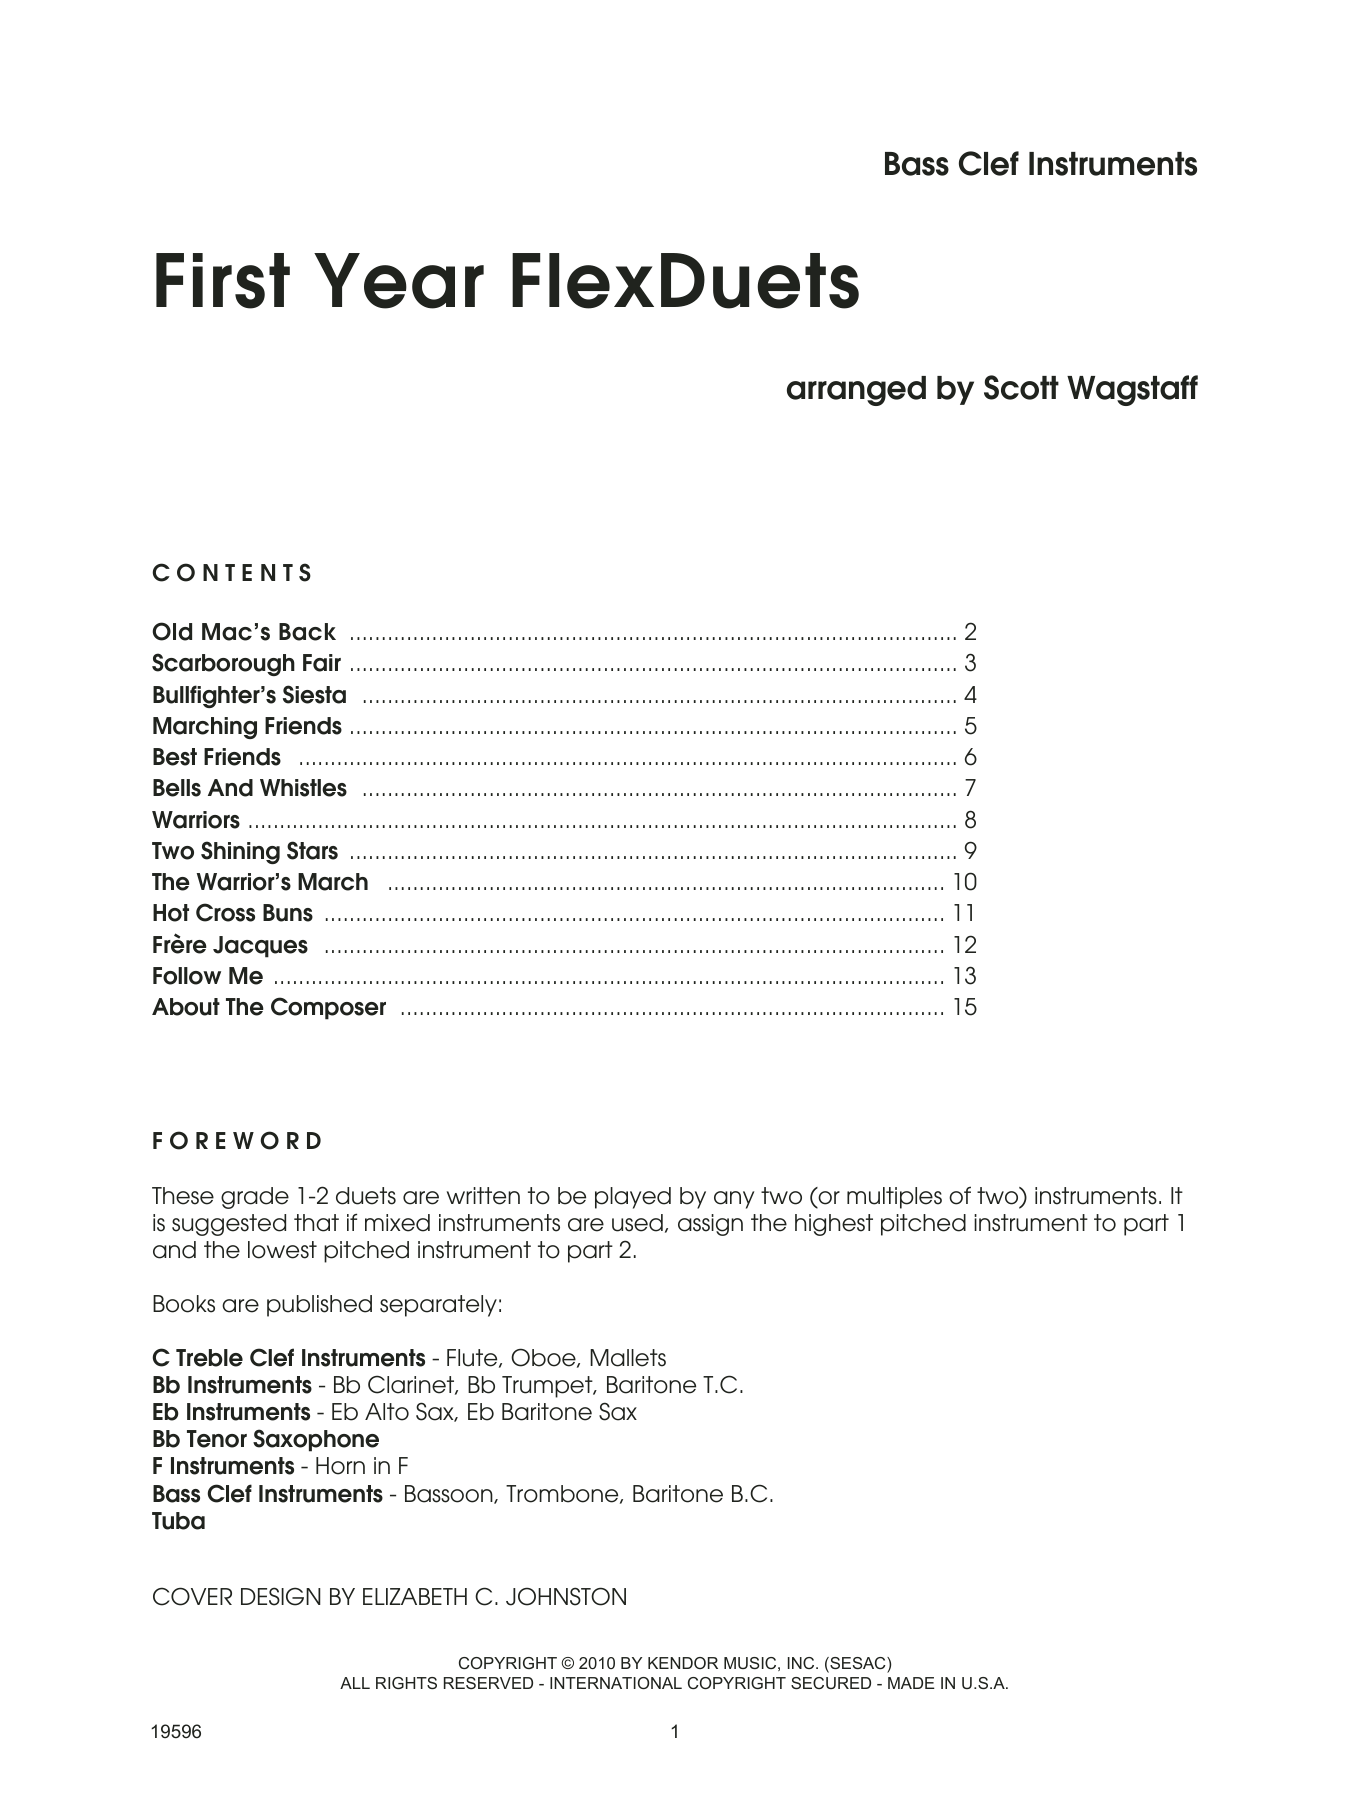 First Year FlexDuets - Bass Clef Instruments (Brass Ensemble) von Scott Wagstaff